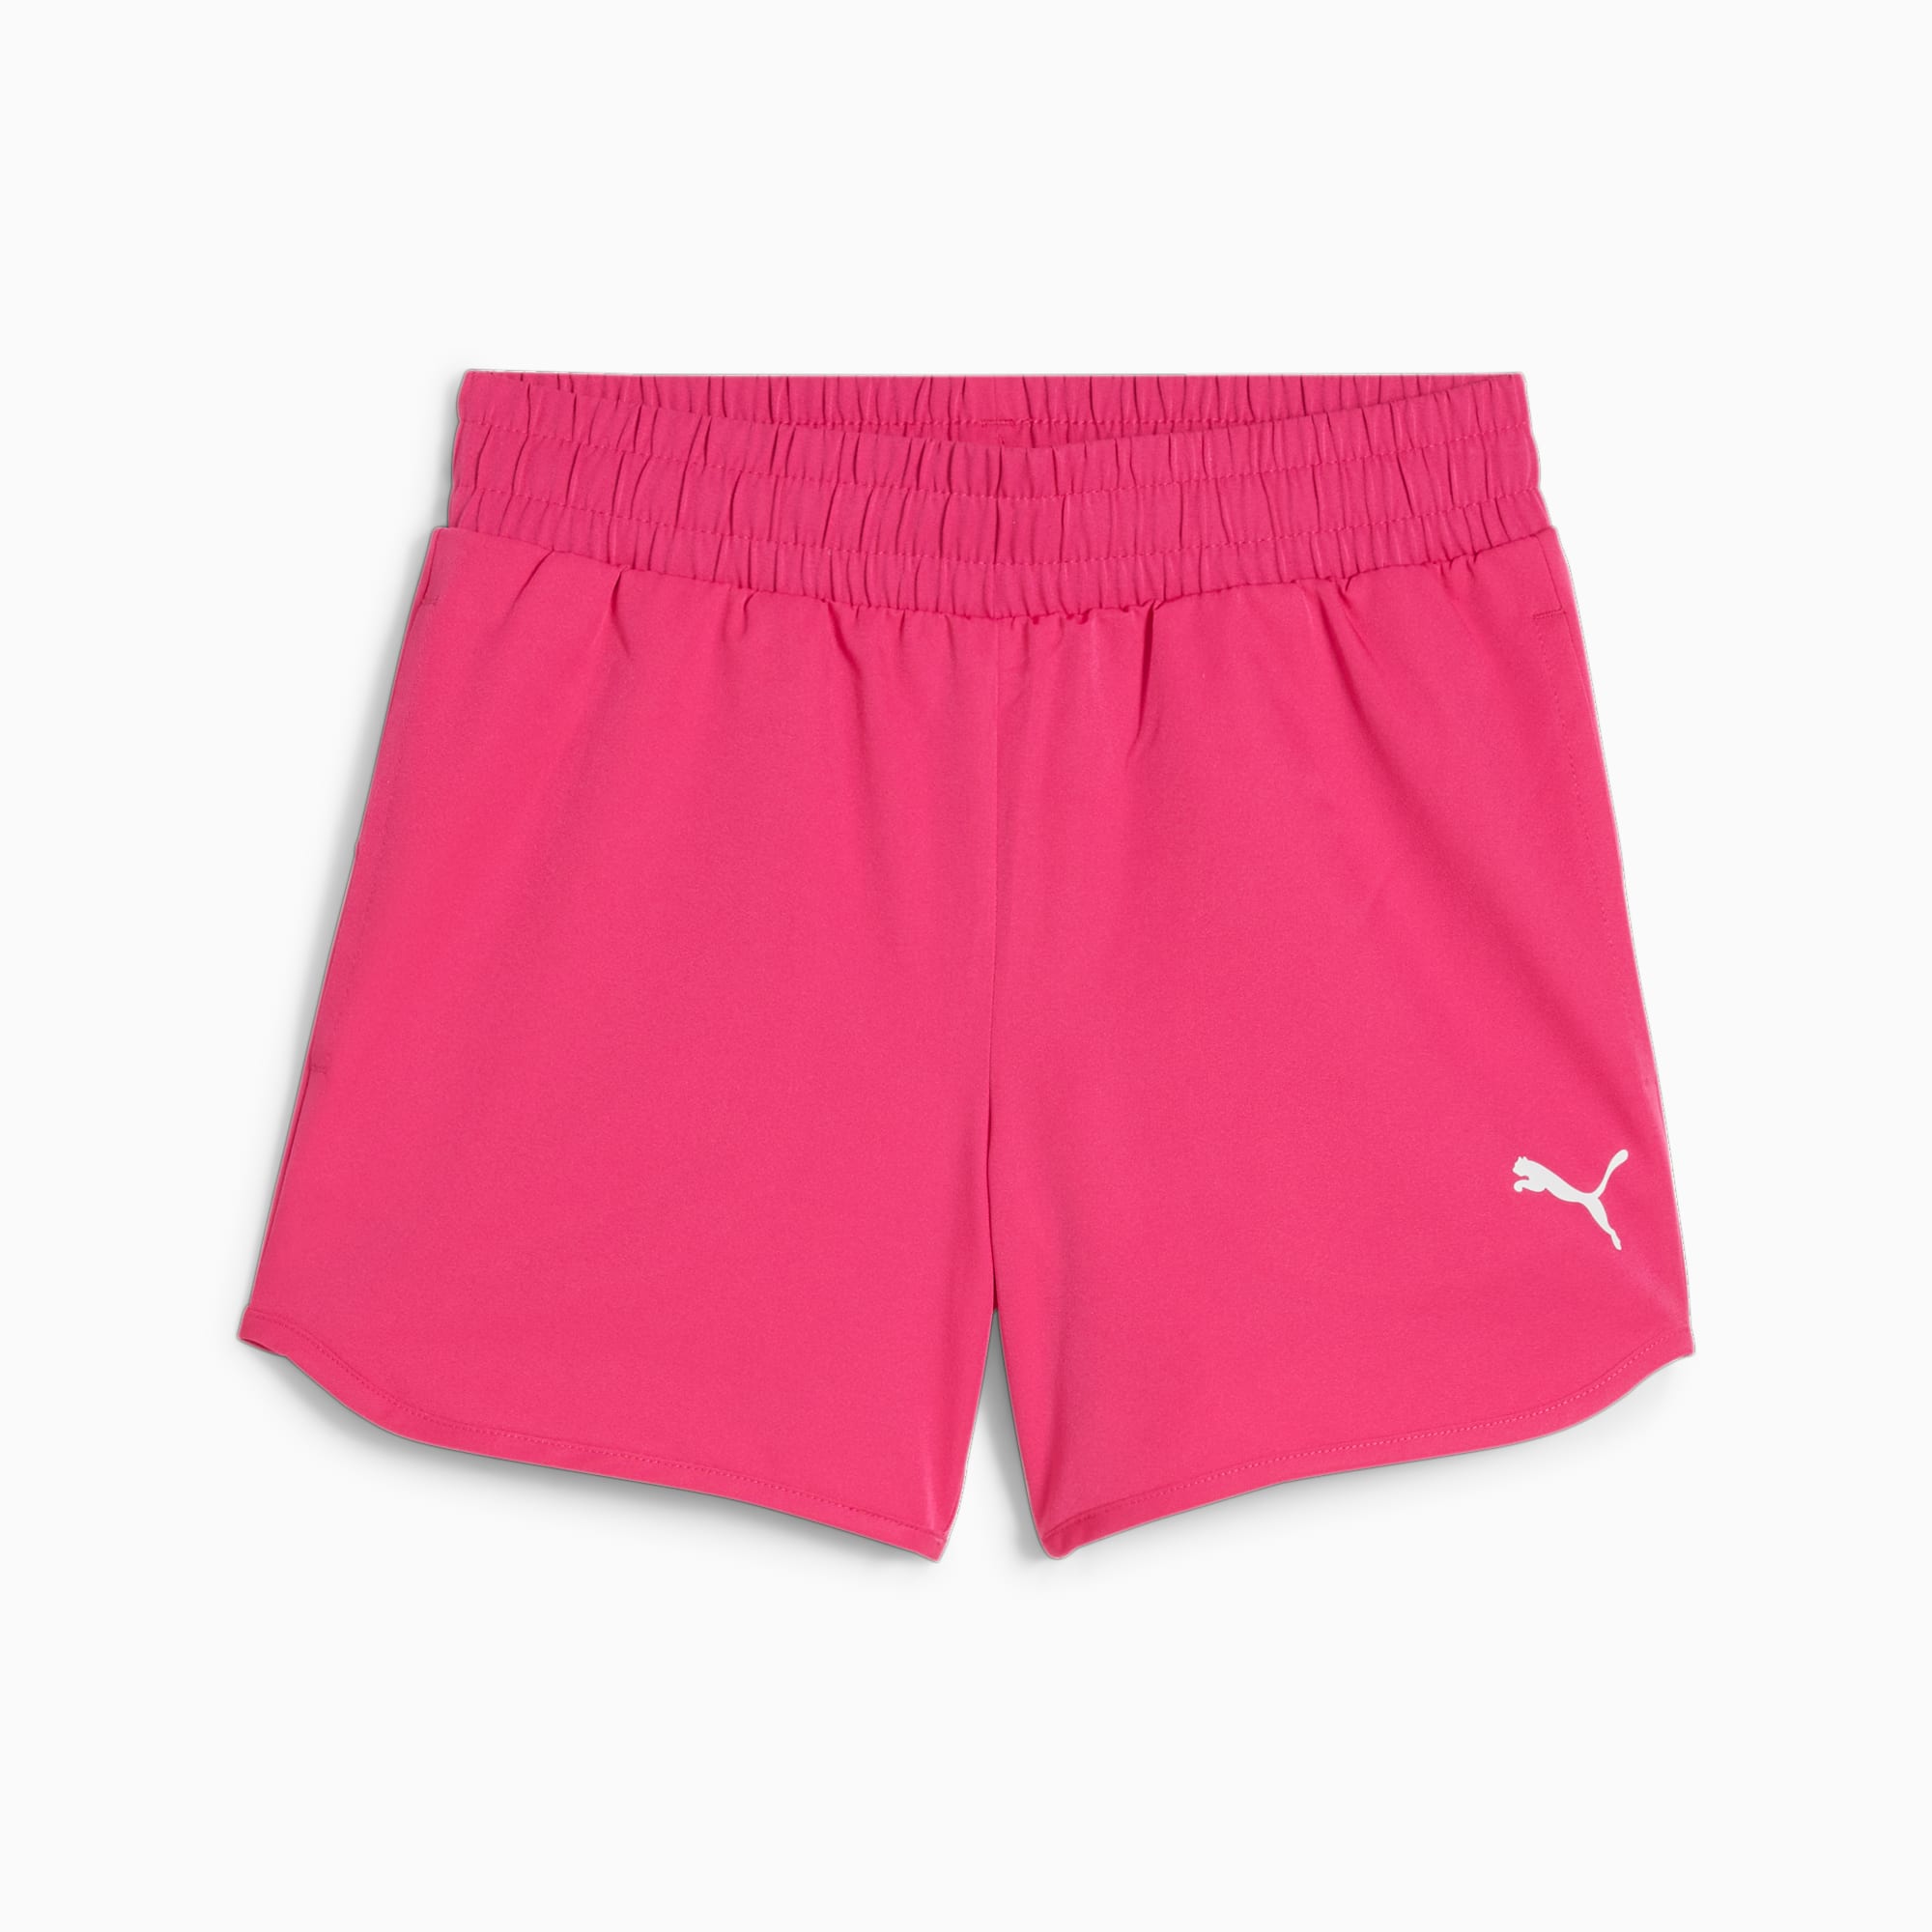 PUMA Active Youth Shorts, Garnet Rose, Size 92, Clothing